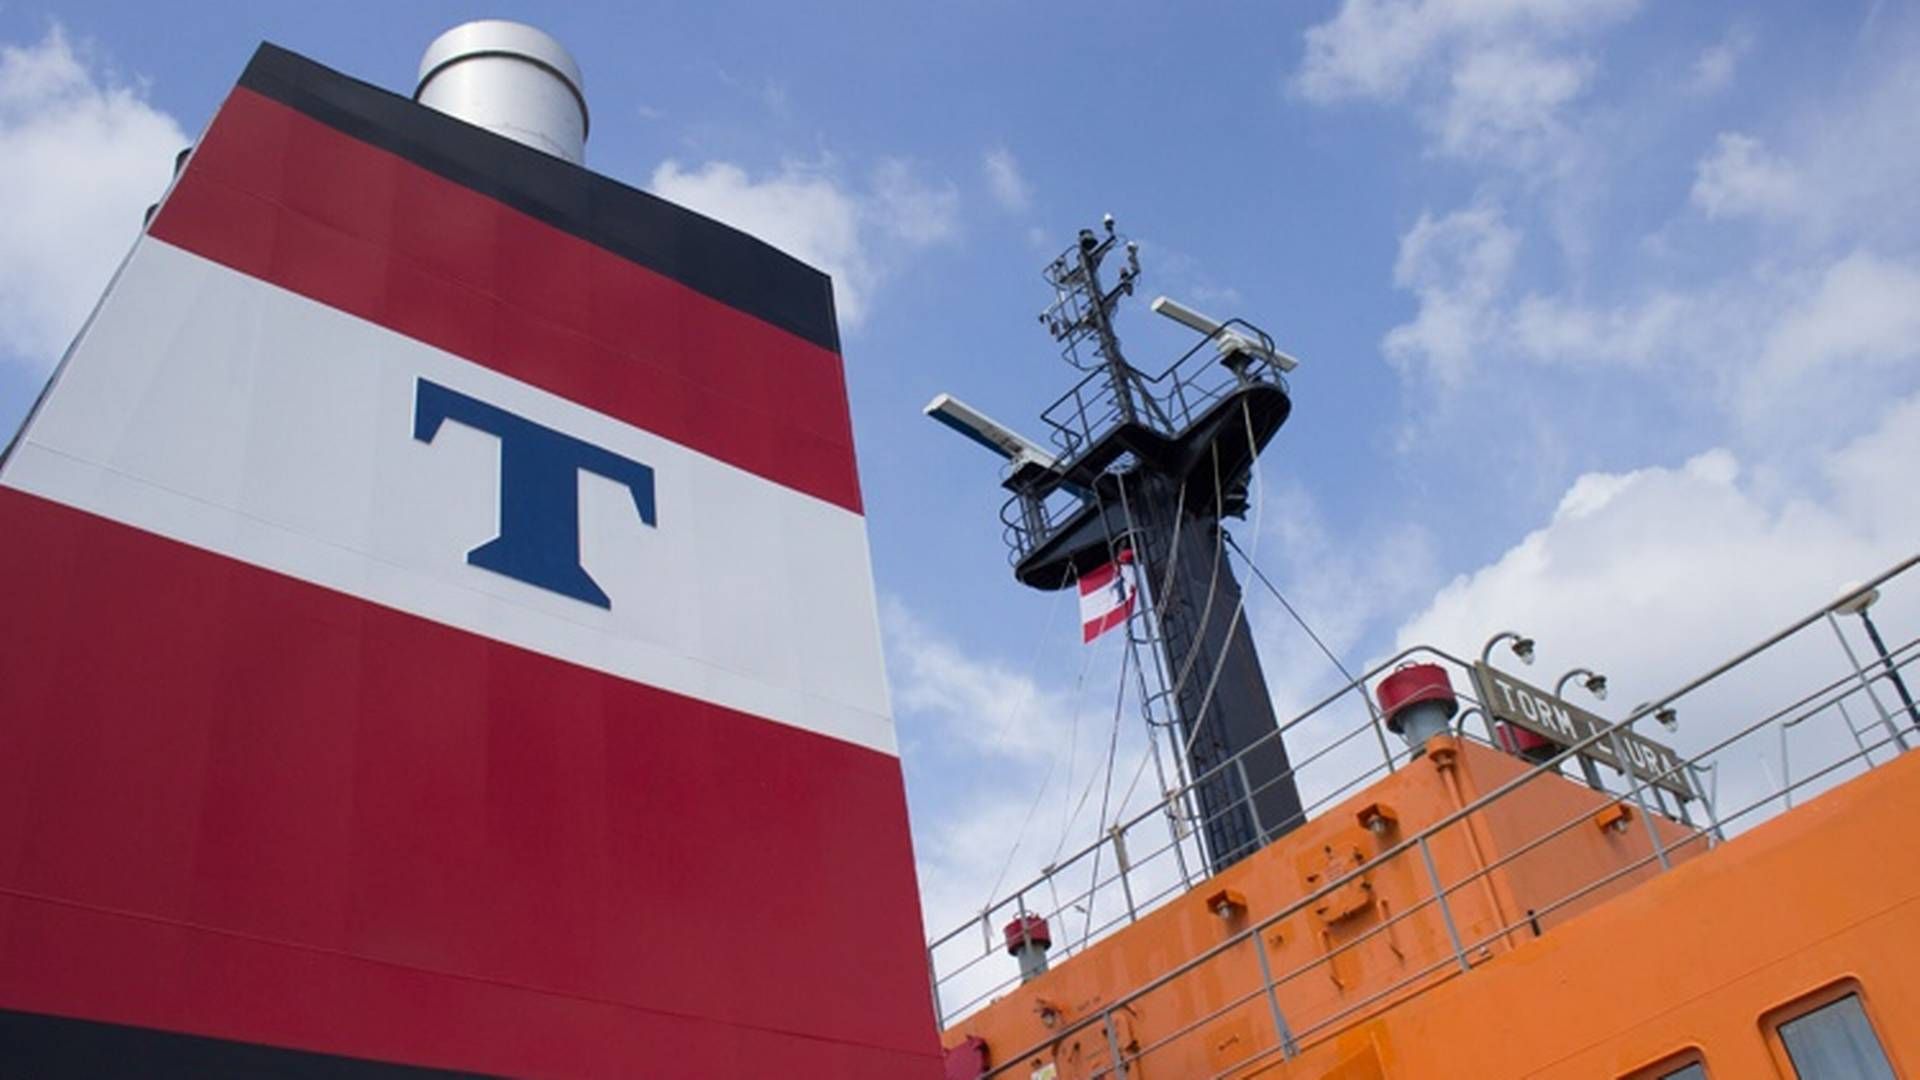 Produkttankrederiet Torm har installeret røgrensning (scubbers) på over halvdelen af skibsflåden. | Foto: Shippingwatch/ Søren Pico